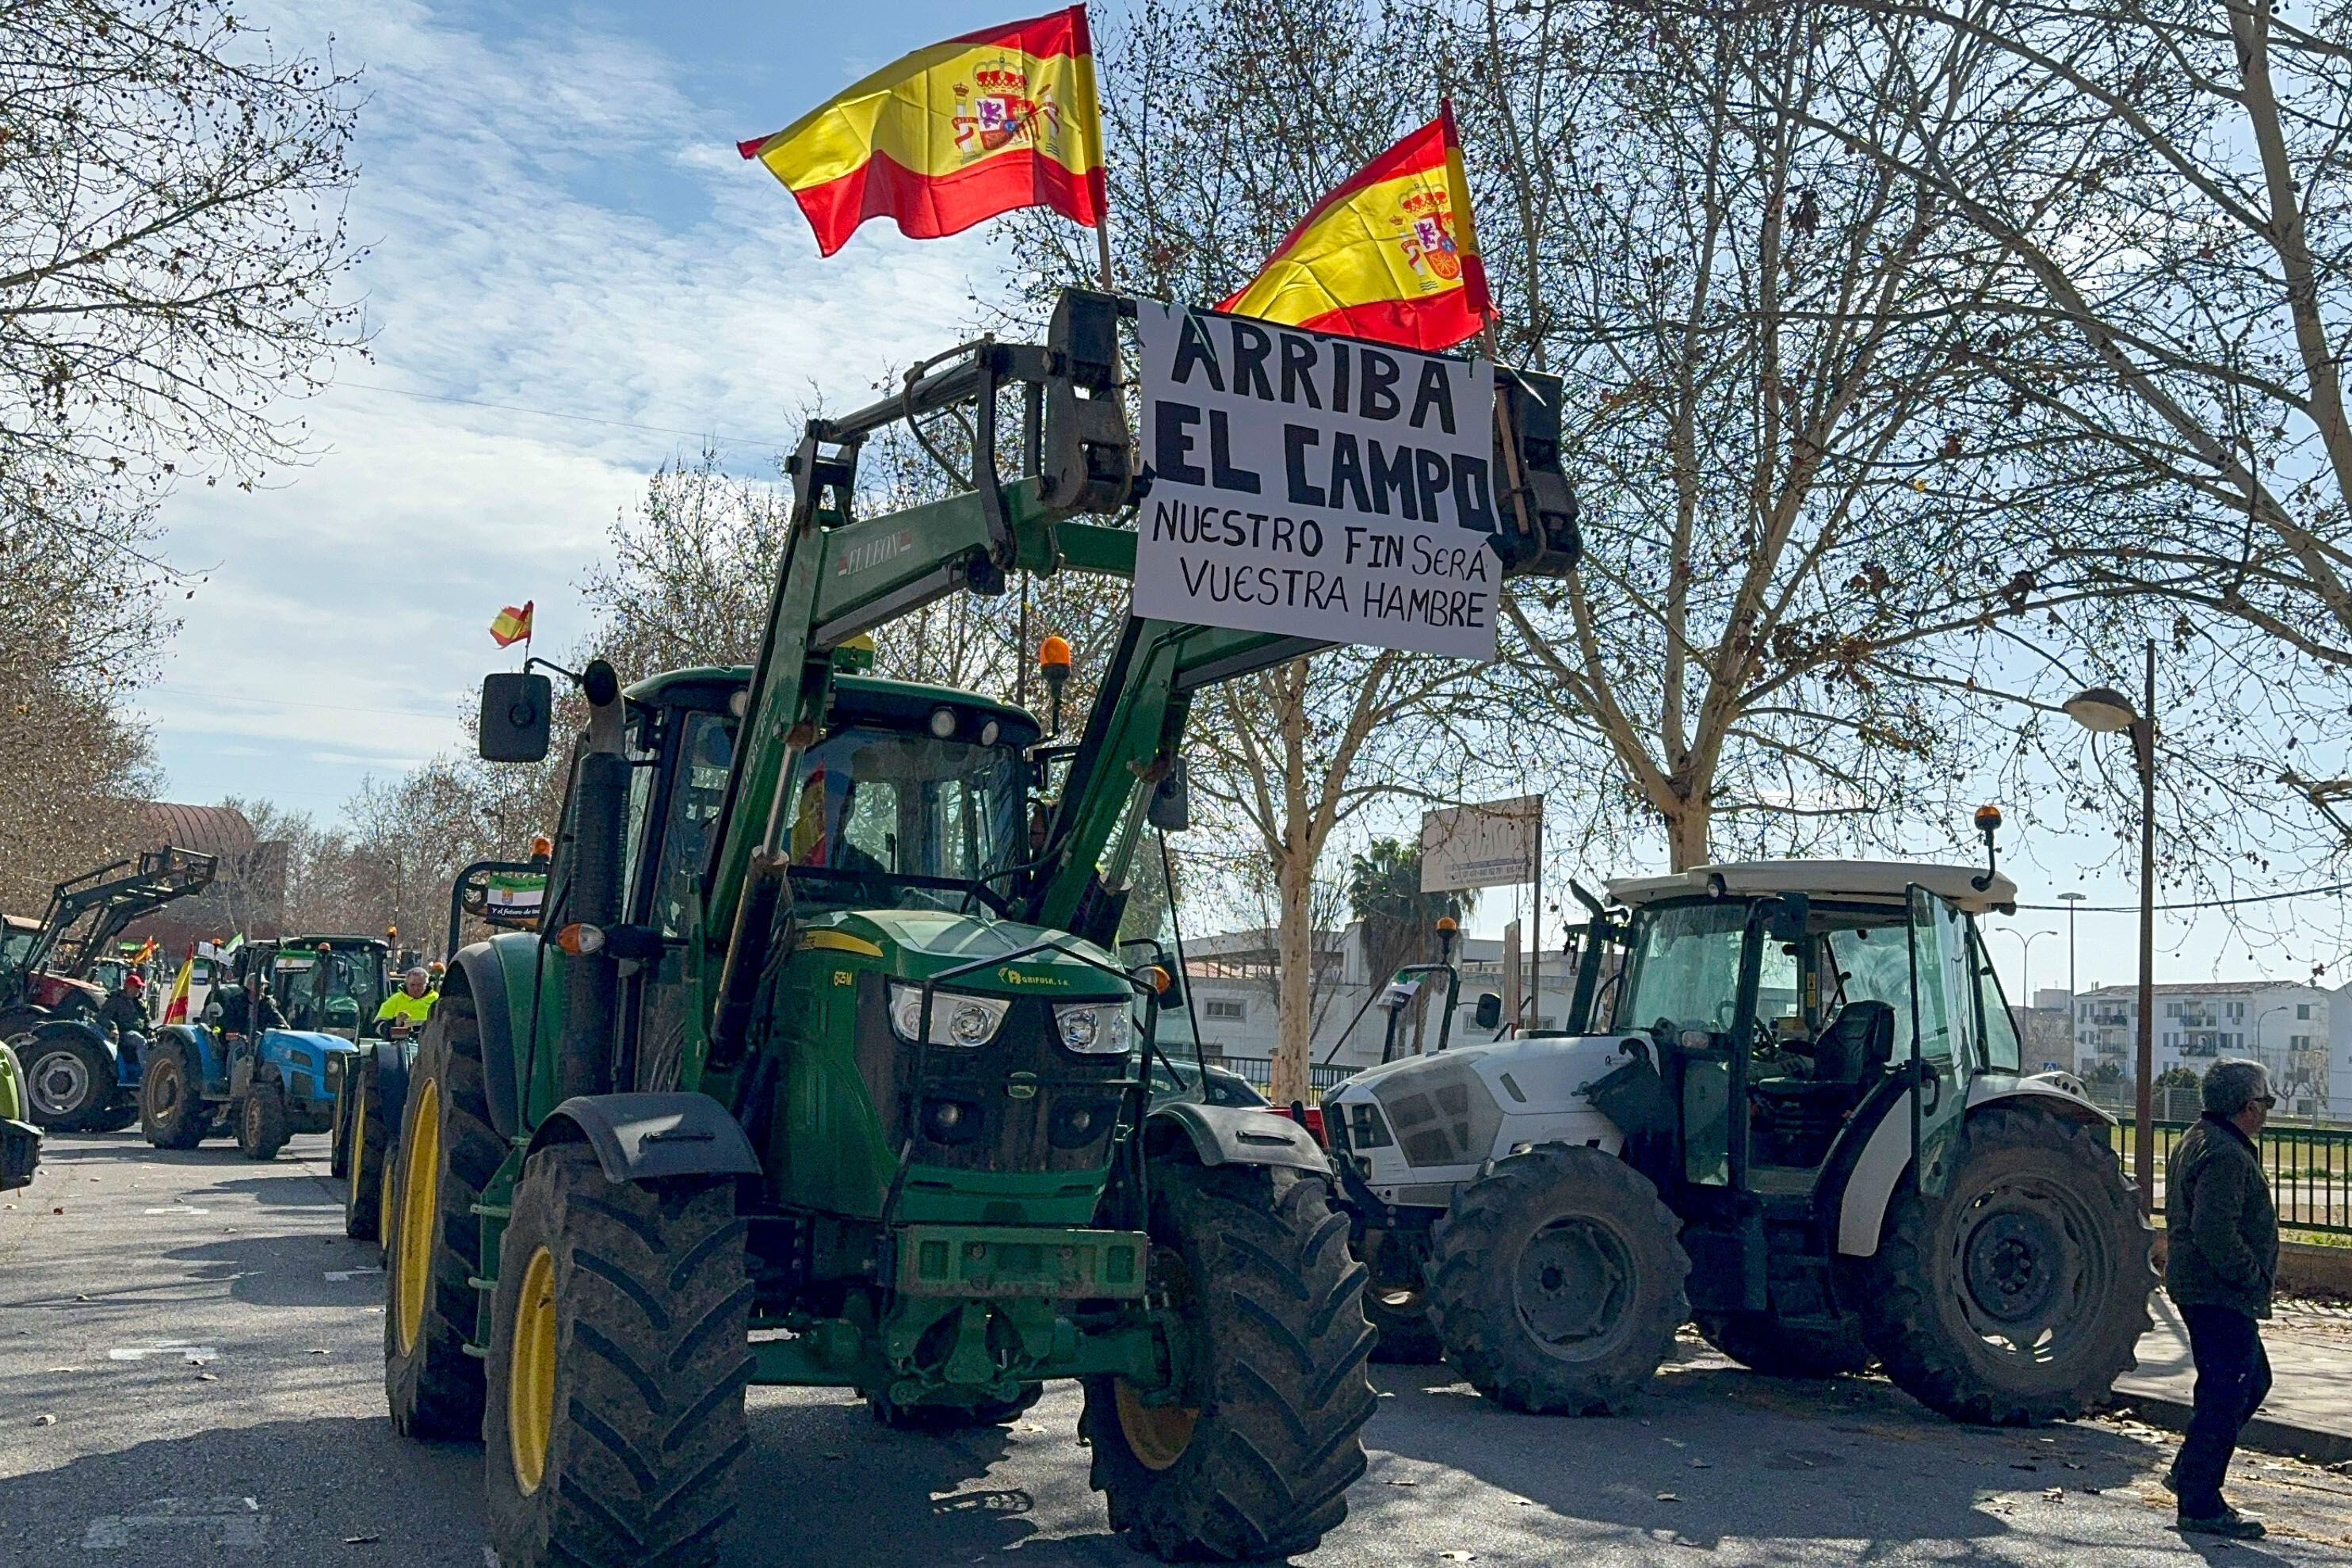 Fotografía de la concentración de tractores con motivo de las protestas del campo este martes, en Zafra (Badajoz).